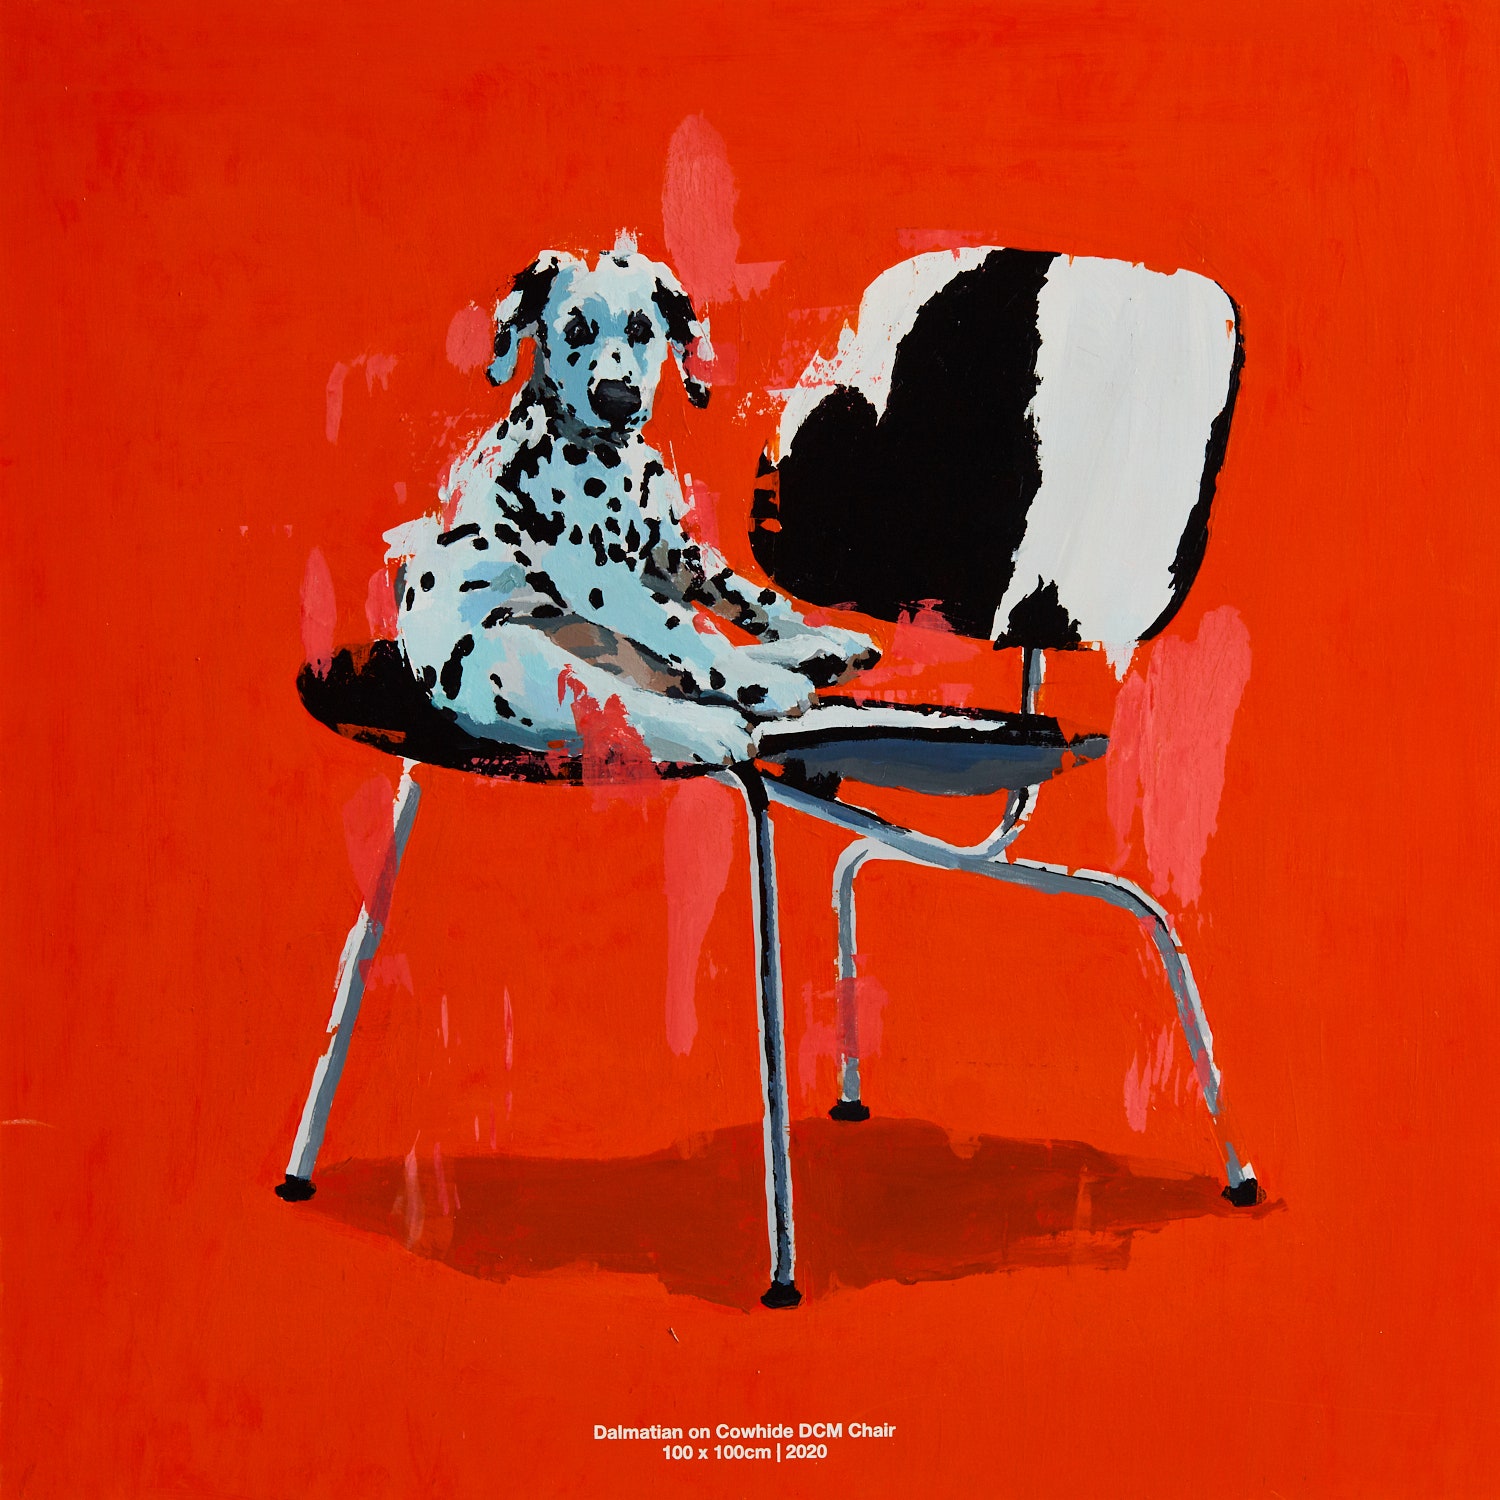 Dalmatian on Cowhide DCM Chair. 2020. 100 x 100 cm.